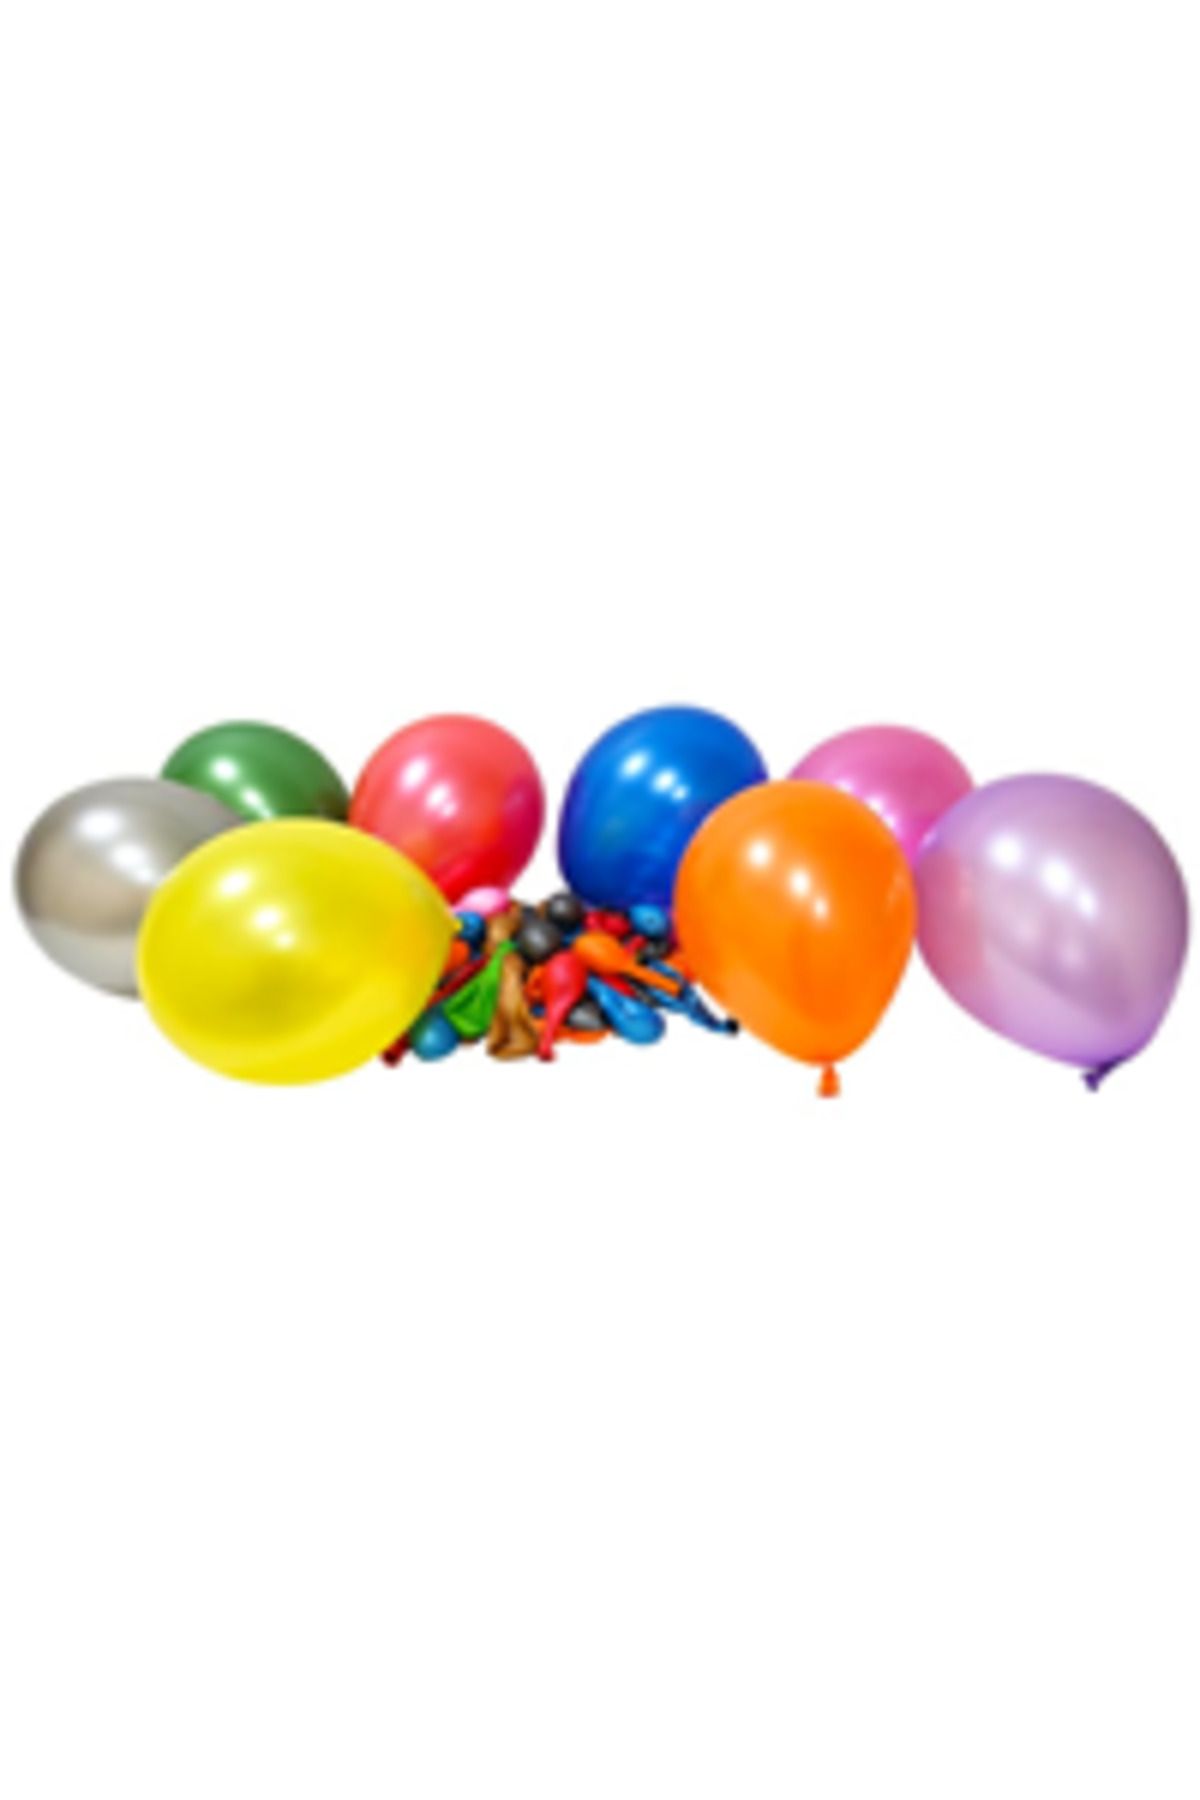 eğlencemarketi 12 Inç Standart Boy Metalik Balon Karışık 100 Adet